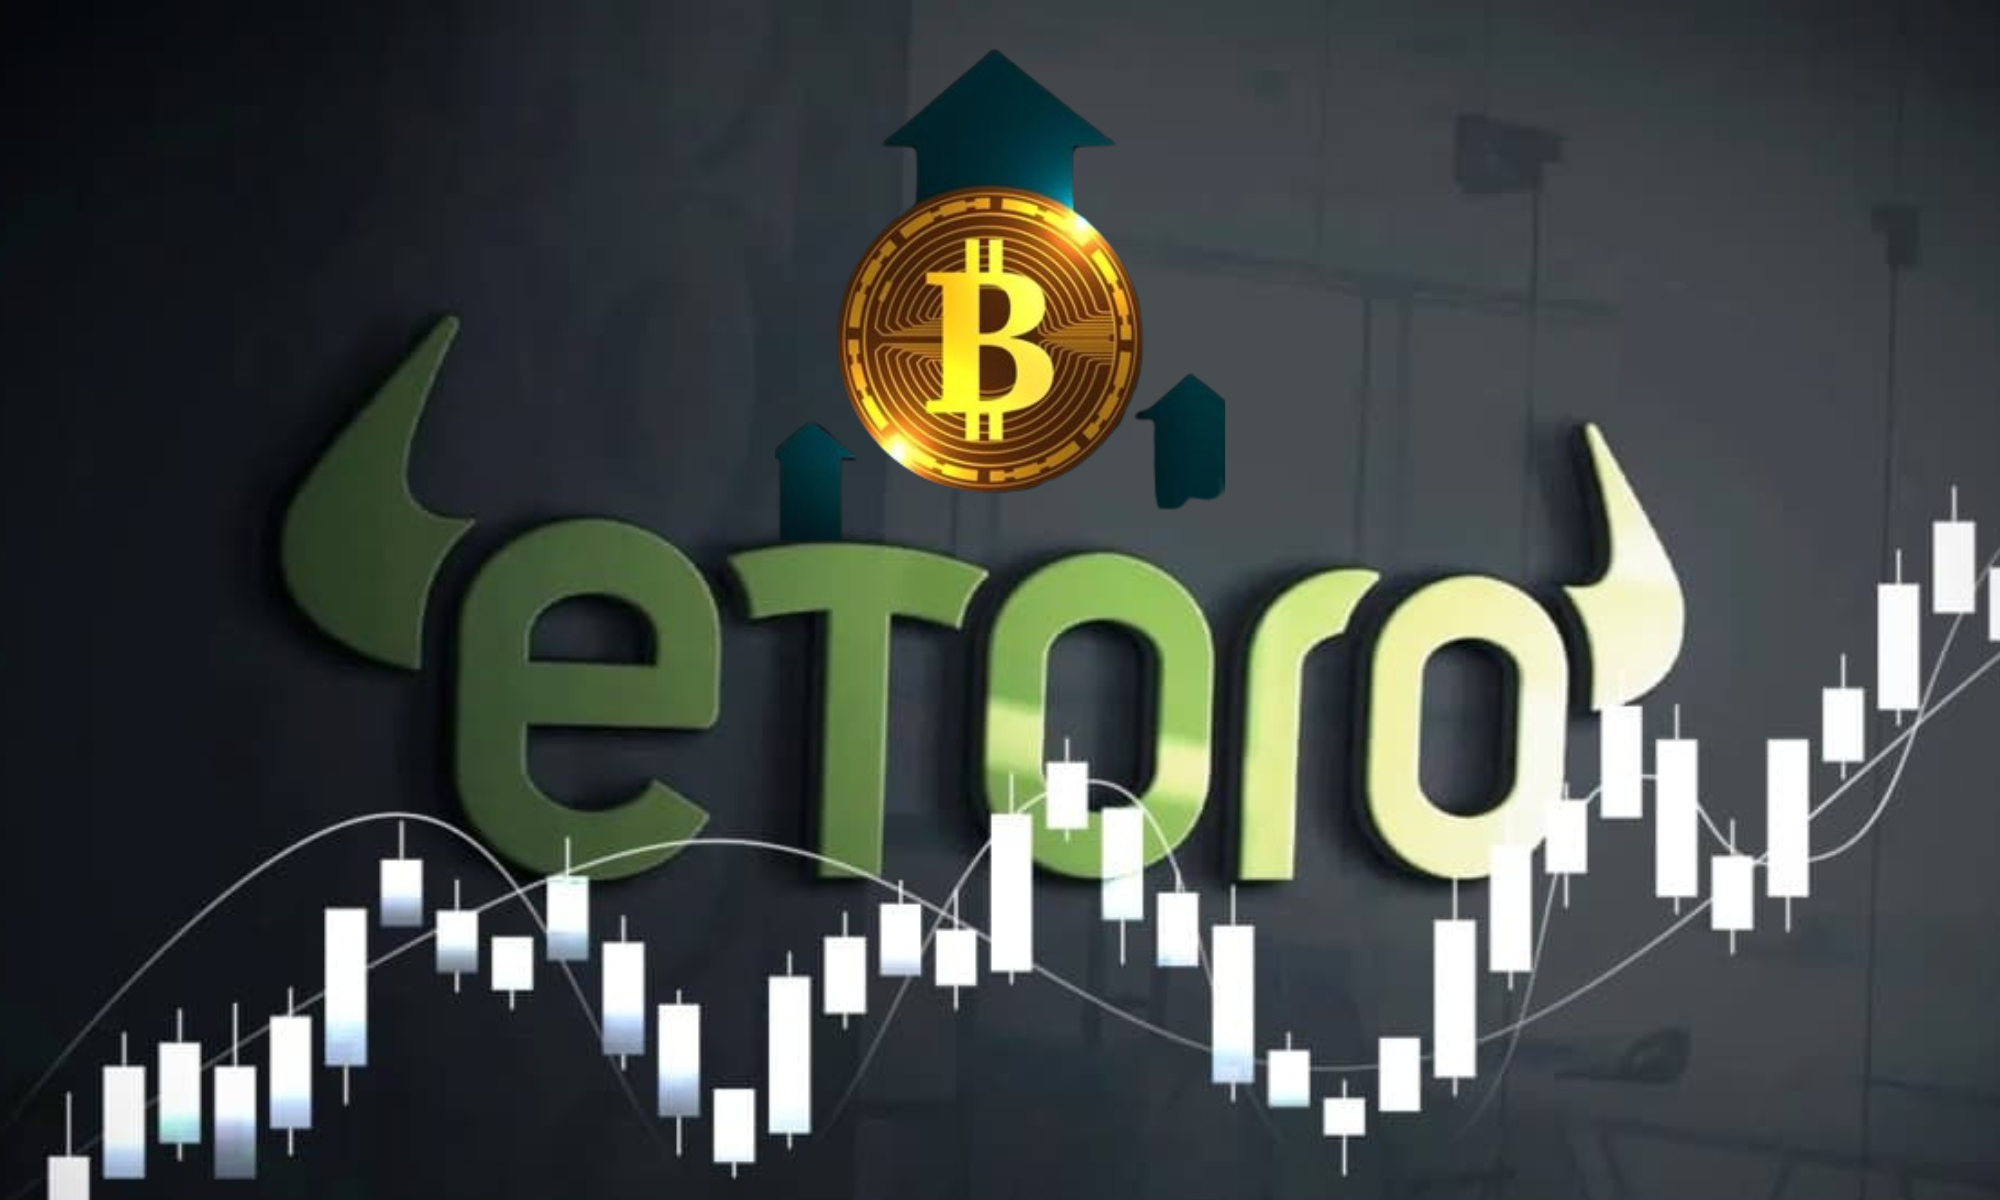 How to buy bitcoin on Etoro